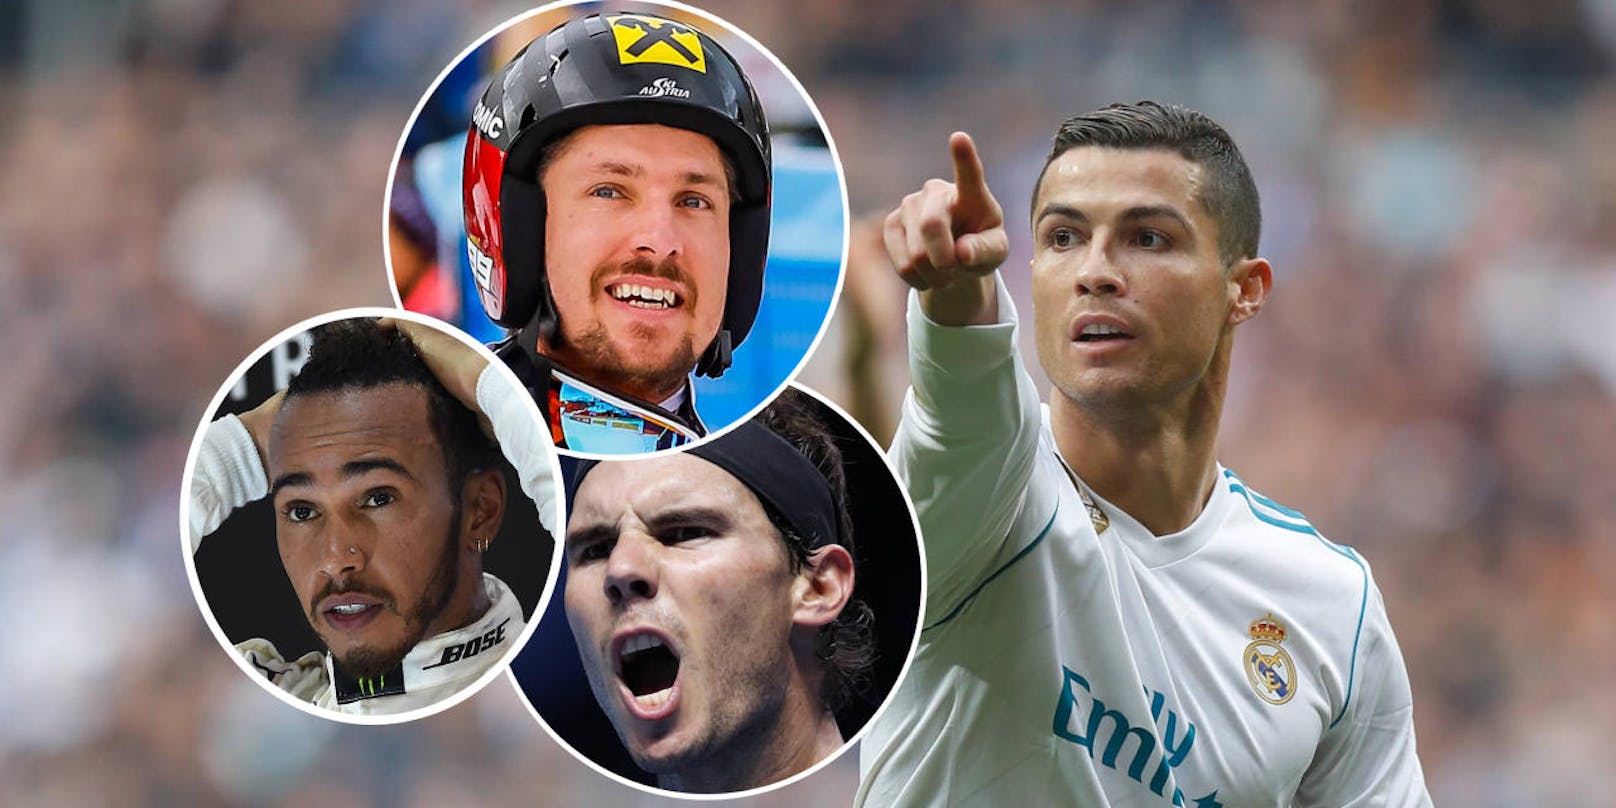 Europas Nachrichtenagenturen wählten den besten Sportler der letzten zwölf Monate. "Heute" präsentiert die Top 10.